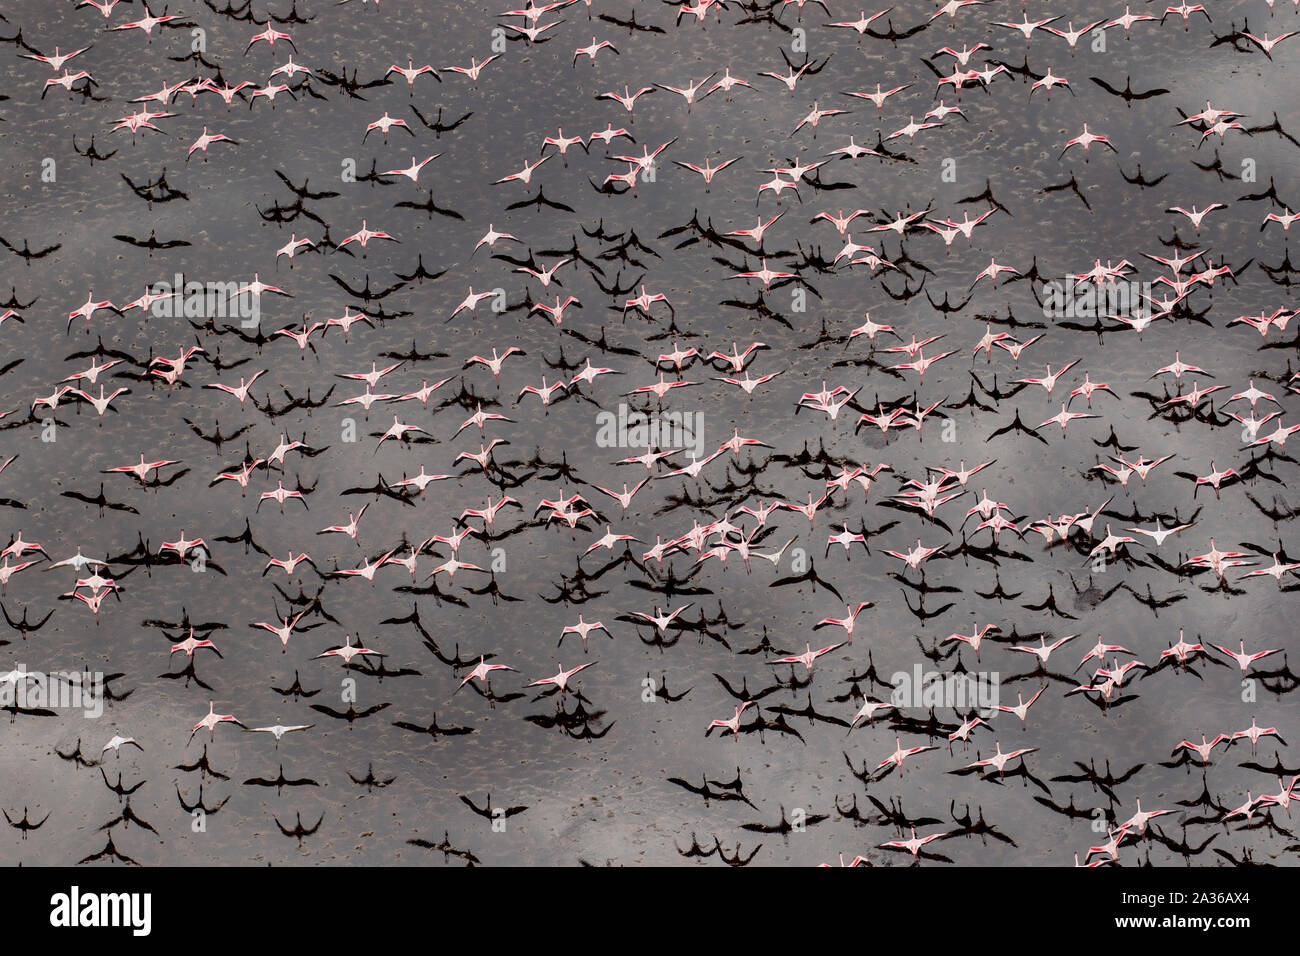 Afrika, Tansania, Luftaufnahme der Herde von größeren und kleineren Flamingos fliegen über Salz Wasser des Lake Natron Stockfoto